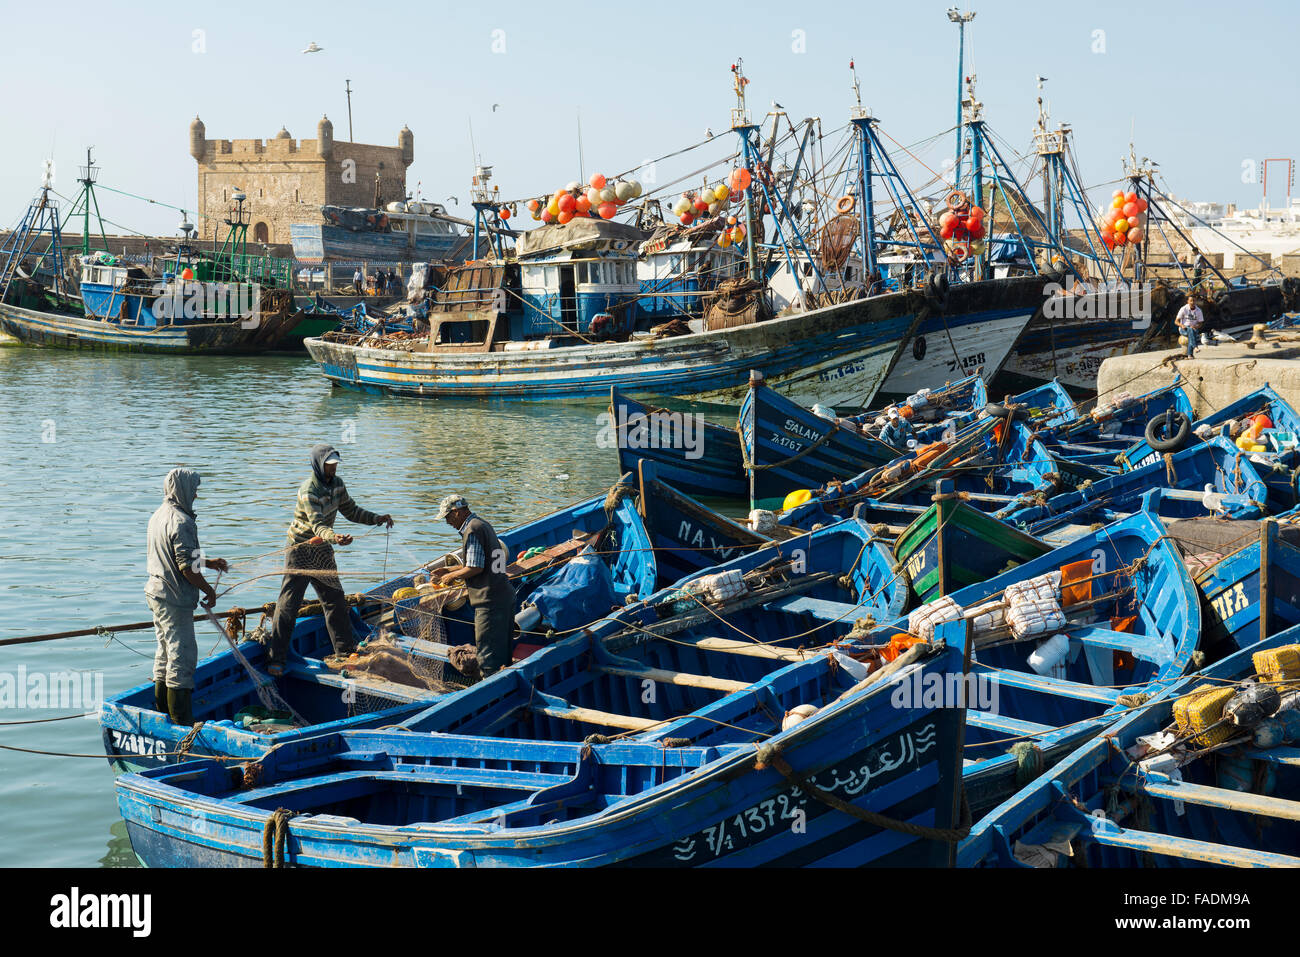 Bateaux de pêche bleu dans le port, Essaouira, Maroc Banque D'Images